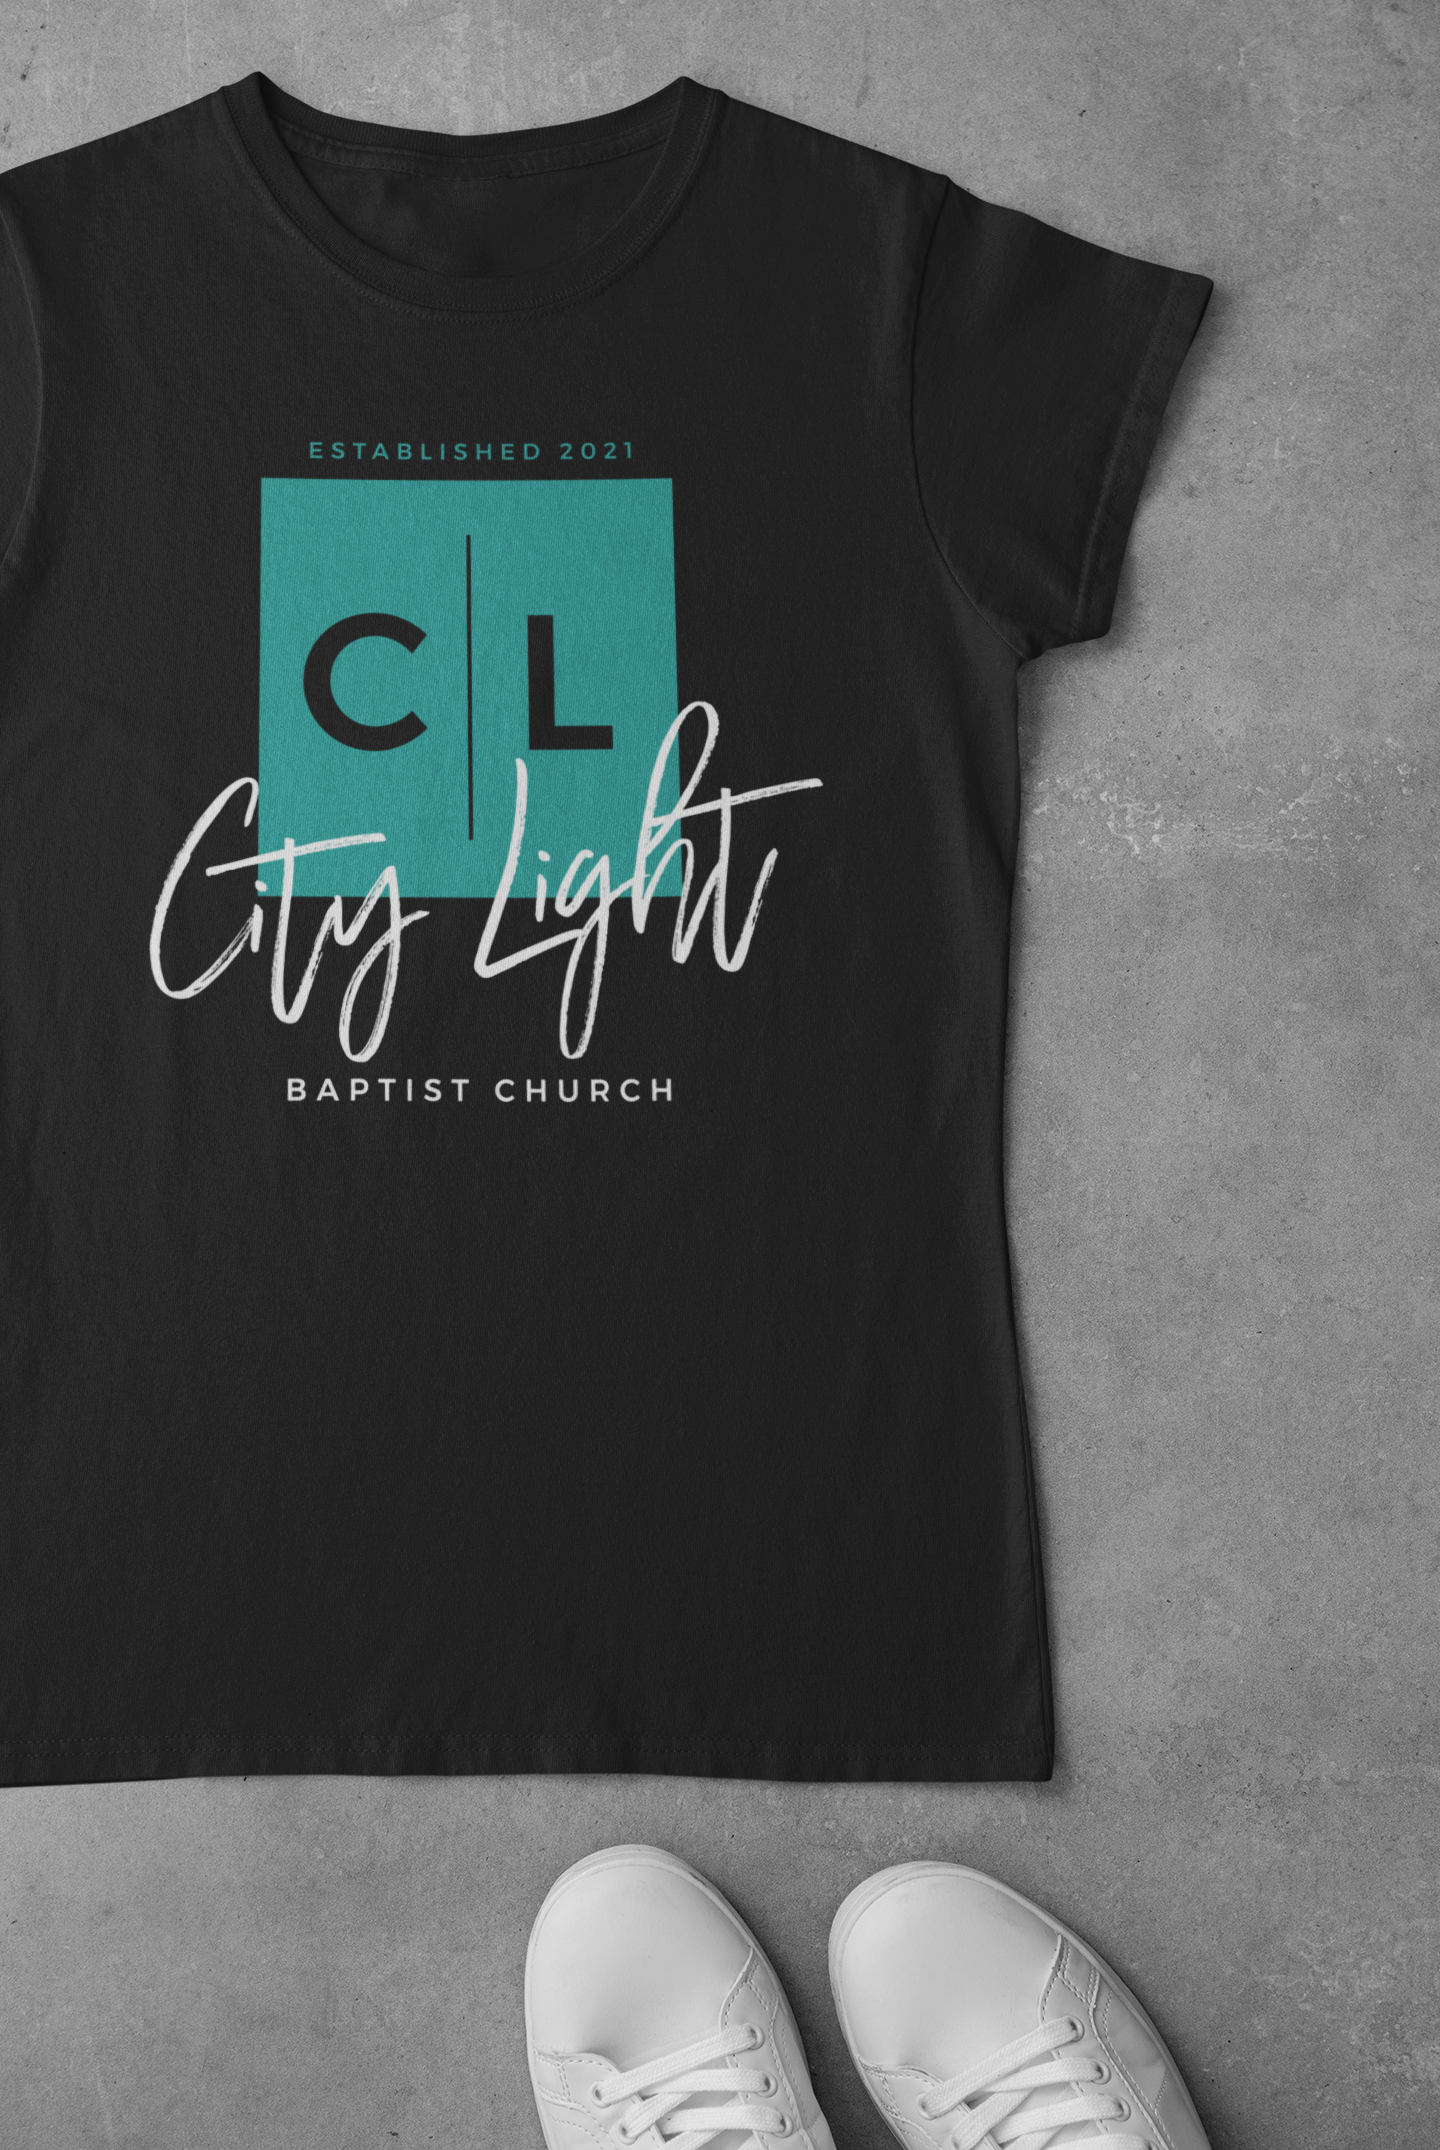 church apparel, church t-shirt, custom design